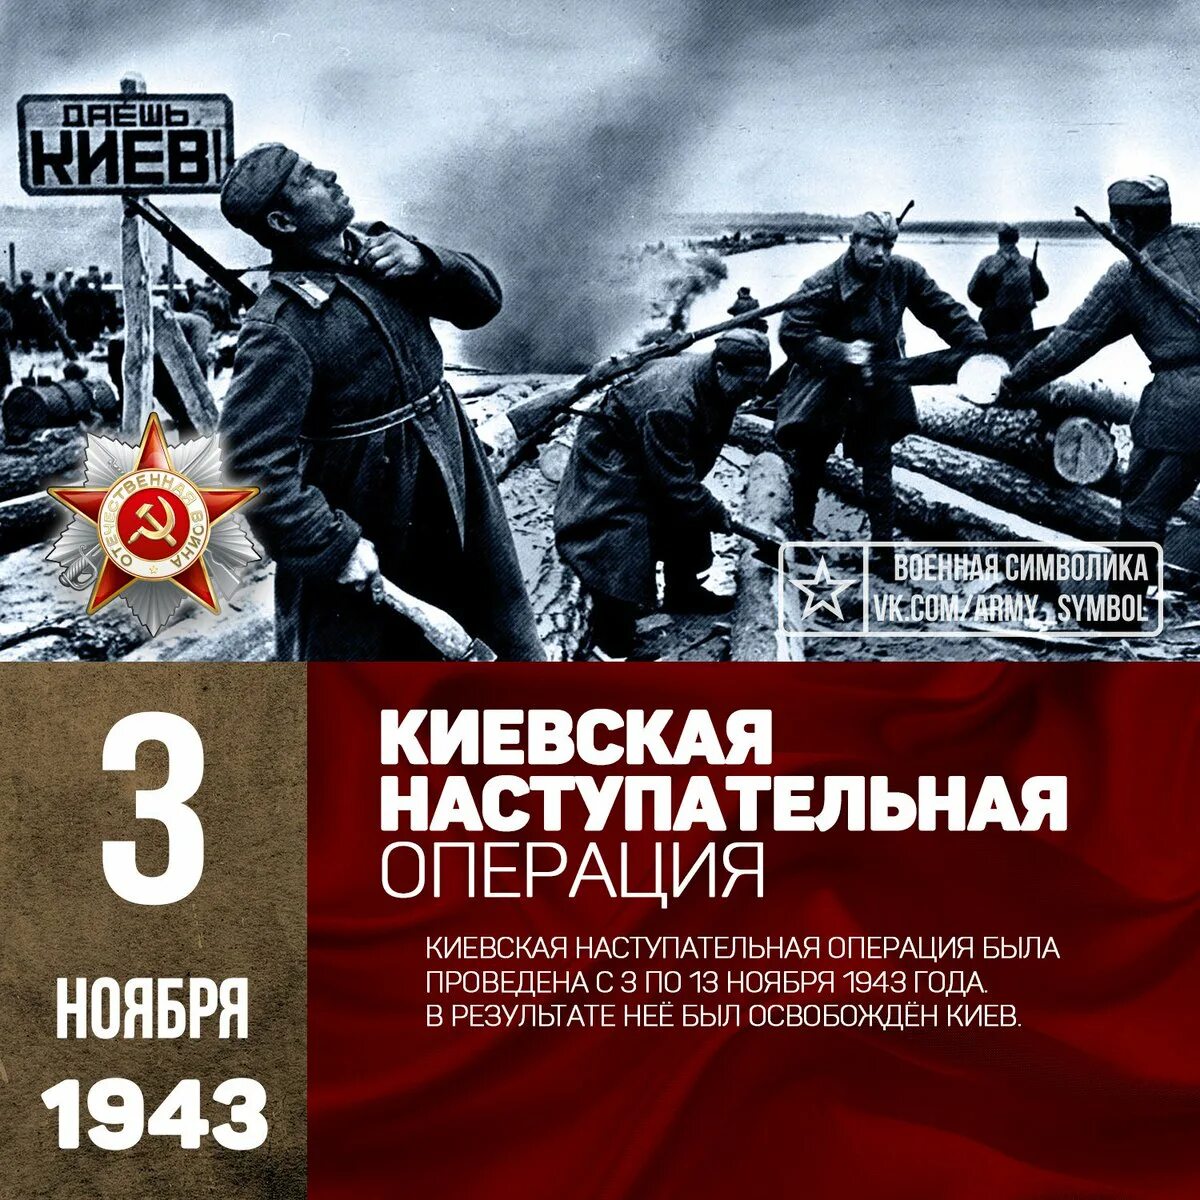 Киевская операция 1943. Киевская наступательная операция 3—13 ноября 1943. Киевская наступательная операция ноябрь 1943 года. Освобождение Киева 1943. Киевская наступательная операция (освобождение Киева) в 1943.